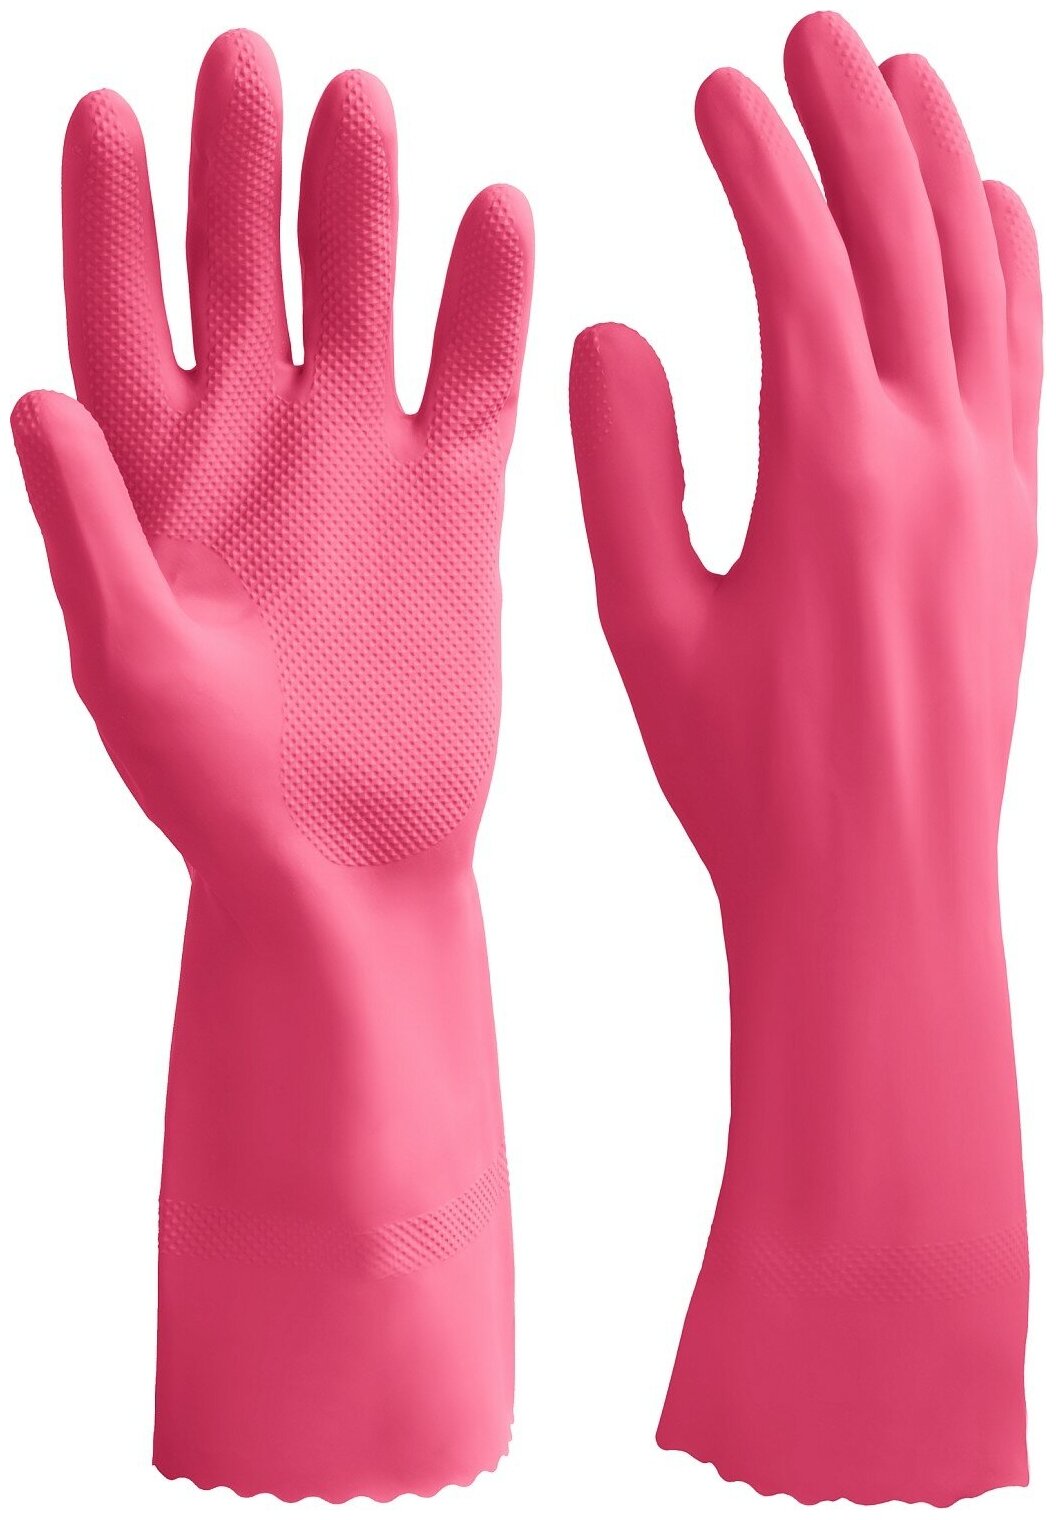 ЗУБР ЛАТЕКС+ перчатки латексные хозяйственно-бытовые стойкие к кислотам и щелочам размер S